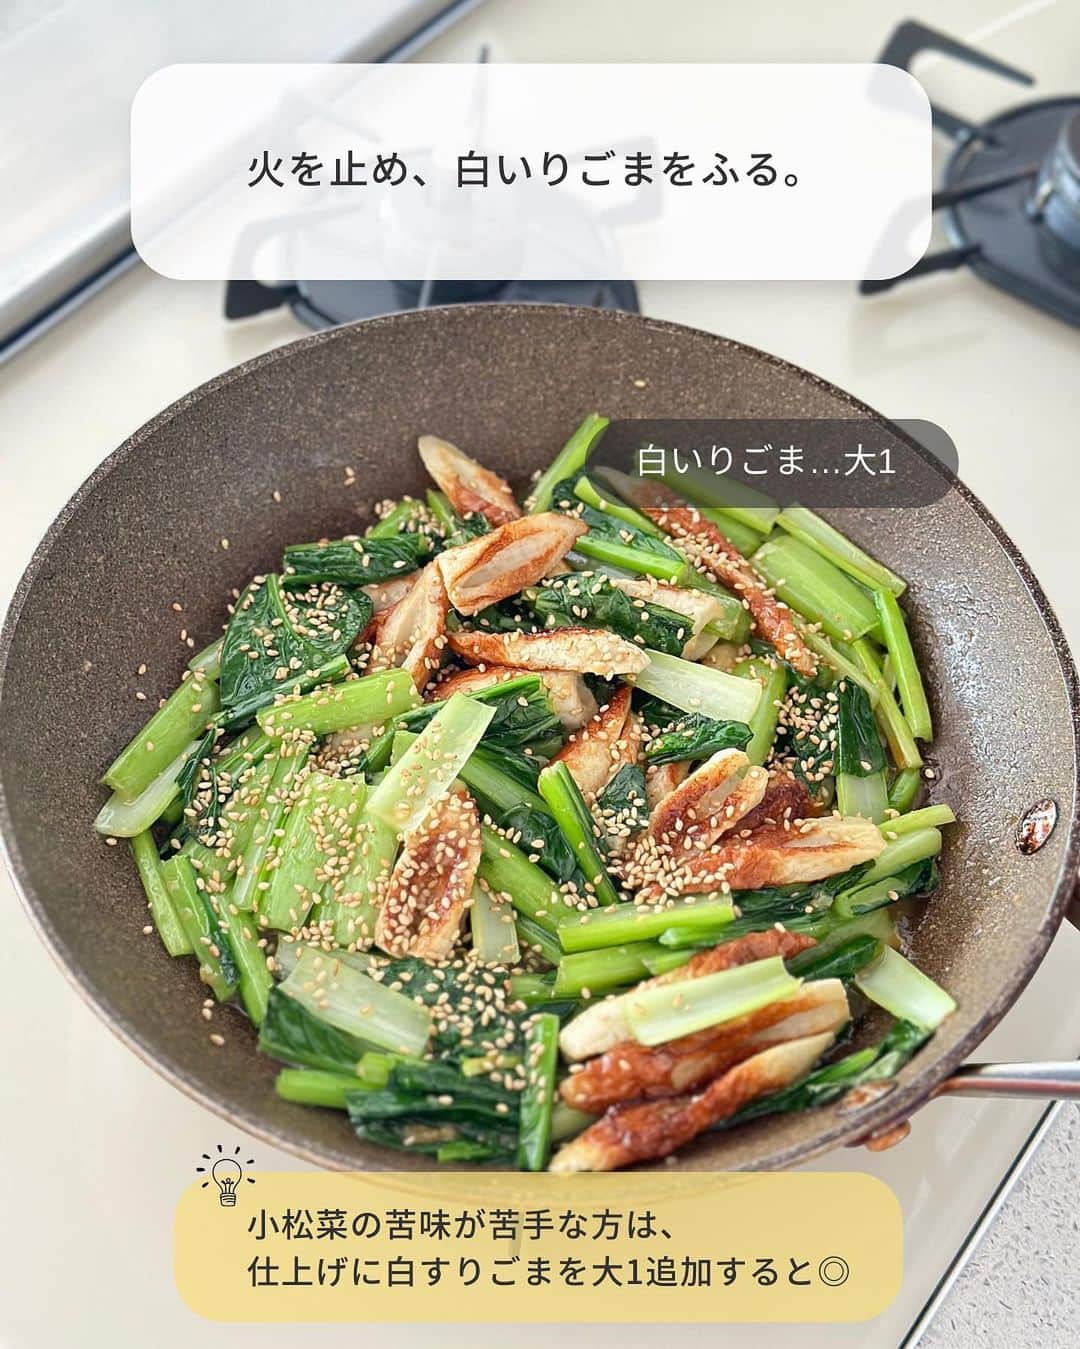 Yuuさんのインスタグラム写真 - (YuuInstagram)「⳹ ごはん泥棒 ⳼ ˗˗˗˗˗˗˗˗˗˗˗˗˗˗˗˗˗˗˗˗˗˗˗˗˗˗˗˗˗˗˗˗˗˗˗˗˗˗˗˗˗˗˗˗˗˗˗ 𓎩  #小松菜ちくわのごま味噌ソテー ˗˗˗˗˗˗˗˗˗˗˗˗˗˗˗˗˗˗˗˗˗˗˗˗˗˗˗˗˗˗˗˗˗˗˗˗˗˗˗˗˗˗˗˗˗˗˗ ⁡ パパッとできて栄養満点💯 あと1品やお弁当にも使える 万能副菜ができました〜👏🏻*´꒳`*)💖 ⁡ 濃厚なごま味噌味で 小松菜嫌いもビックリの美味しさ😳 ⁡ ちくわ入りでボリュームも旨味もマシマシ。 ごはんにもビールにもぴったりです👍🏻 ̖́- ⁡ 今回は、小松菜で作りましたが ほうれん草でもいいし これからの季節は、なすでも絶対美味しい🍆 ⁡ ちくわがベストですが 苦手であれば厚揚げで作っても◎ ⁡ ちょっと地味だけど(笑) 小松菜が驚くほど食べれるので よかったらお試しくださいね(*^^*)👍🏻 ̖́- ⁡ ⁡ ⁡ ‎‎𐒨 小松菜ちくわのごま味噌ソテー 𐒧 𐩢𐩺꙳⋆ᐝ ￣￣￣￣￣￣￣￣￣￣￣￣￣￣￣￣￣￣￣￣￣￣ ⏰調理時間：10min 🐧冷蔵保存：2〜3日 ⁡ ❲材料：2〜3人分❳ ⁡ ちくわ(※)…1袋(4本) 小松菜…1束(200g) ごま油,白いりごま…各大1 ⚪︎ みりん…大2 ⚪︎ 白すりごま,酒…各大1 ⚪︎ 味噌…小2 ⚪︎ しょうゆ,砂糖…各小1 ⁡ ⁡ ➊ ちくわは斜め薄切りにする。小松菜は葉と茎に分け、それぞれ3〜4cm長さに切る。 ➋ フライパンにごま油を中火で熱し、ちくわ→小松菜の茎の順に炒める。火が通ったら小松菜の葉を加え、さらに炒める。 ➌ 小松菜の葉がしんなりしたら弱火にし、合わせた〔⚪︎〕を回し入れて絡める。火を止め、白いりごまをふる。（小松菜の苦味が苦手な方は、仕上げに白すりごまを大1追加すると◎）  ⁡ ￣￣￣￣￣￣￣￣￣￣￣￣￣￣￣￣￣￣￣ (※)一正蒲鉾さまの( @ichimasa_official ) 𐒨 笹竹 ちくわ 4本 𐒧 を使用✨ ⁡ ⁡ ⁡ 𐒨 代用 𐒧ˎˊ˗  ⁡ ❏ ❮ ちくわ ❯ ➭ ちくわがベストですが、苦手な方は厚揚げでも♩ ❏ ❮ 小松菜 ❯ ➭ ほうれん草・なすでも可 ⁡ ⁡ 𐒨 冷凍保存 𐒧ˎˊ˗  ⁡ ❏ 水分が出やすいので、すりごまをたっぷり入れるか、小松菜を事前に加熱してから炒めると◎ ⁡ ⁡ 𐒨 その他 𐒧ˎˊ˗  ⁡ ❏ 甘めの味つけです。お好みで砂糖を小1/2に減らしても♩(その場合、小松菜の苦味がより強く感じられます) ❏ 小松菜の苦味が苦手な方は、仕上げに白すりごま大1を追いごましても！ ❏ 〔⚪︎〕は煮詰まりやすいので、弱火にするか火を止めてから加えてください ❏ 味噌は[合わせ味噌]を使用 ⁡ ⁡ ⁡ ⁡ ⁡ 🧸𓈒𓏸◌〔 愛用のキッチングッズ 〕𓂅𓎩‎ ┄┈┈┈┄┈┈┈┄┈┈┈┄┈┈┈┈┈┈┈ 　 　　#楽天ルーム に載せています🐼♥ˎˊ˗  ⁡ ┄┈┈┈┄┈┈┈┄┈┈┈┄┈┈┈┈┈┈┈ @yuuyuu514 のハイライトから飛べます𖤐˒˒ ⁡ ⁡ ⁡ ⁡ ⁡ ⁡ 🧸𓈒𓏸◌〔 お 願 い 〕𖤐˒˒ ┄┈┈┈┄┈┈┈┄┈┈┈┄┈┈┈┈┈┈┈ ⁡ 〜 次に作る誰かのために 〜 コメントお待ちしております💭 ⁡ ☑︎レシピへの質問・感想 ☑︎アレンジしたこと ☑︎失敗したこと erc… ⁡ よくある質問やアレンジ・失敗談は コメントでトップ固定しております📍ˎˊ˗  ⁡ ぜひ、参考にして作ってみてくださいね👩🏻‍🍳 ⁡ ┄┈┈┈┄┈┈┈┄┈┈┈┄┈┈┈┈┈┈┈ フォロワーさん同士でも 気軽にお話ししてくださいね🤝💞 ⁡ 1人では試作が追いつかない部分もあるので 私の代わりに質問に答えてくださるのも 大大大歓迎です⋆⸜(* ॑꒳ ॑* )⸝♡ ⁡ ⁡ ⁡   ⁡  ⠀ ⠀ ⠀ ＼ 新 刊 発 売 中 ／ ■□■□■□■□■□■□■□■□■□ 「今日なに作ろう？」をおいしく解決！  ⠀ #Yuuのラクうまよくばりキッチン ■□■□■□■□■□■□■□■□■□  ⠀ ⠀ ⠀ ⠀  𝙰𝚖𝚊𝚣𝚘𝚗、楽天、全国の書店にて お買い求め頂けます( ⸝⸝•ᴗ•⸝⸝ )੭⁾⁾𓈒⋆꙳ ⁡ ▶︎詳しくは @yuuyuu514 のハイライト 　またはプロフィールのリンクから🔗 ⁡ 📖⸝꙳『Yuuのラクうま♡ベストレシピ』  𝟸𝟶万部突破のロングセラー👏 ⁡ 📖⸝꙳『𝚈ｕｕのラクうま♡晩ごはん』 　　𝟹𝟶分で晩ごはん😋🍽 ⁡ 📖⸝꙳『𝚈ｕｕのラクうま♡野菜まるごとレシピ』 　　 野菜レシピ＆保存法ならおまかせ🍅🥦 ⁡ - - - - - - - - - - - - - - - - - - - - - - - - - - - - ⁡ ⁡ ⁡ ⁡ ⁡ 🏷 #小松菜レシピ #小松菜 #ちくわレシピ #ちくわ #ちくわ料理 #作り置きレシピ #つくりおきレシピ #お弁当レシピ #お弁当おかず #冷凍 #冷凍保存 #冷凍作り置き  #簡単レシピ #時短レシピ #節約レシピ #一正蒲鉾 #笹竹 #PR」4月23日 8時15分 - yuuyuu514